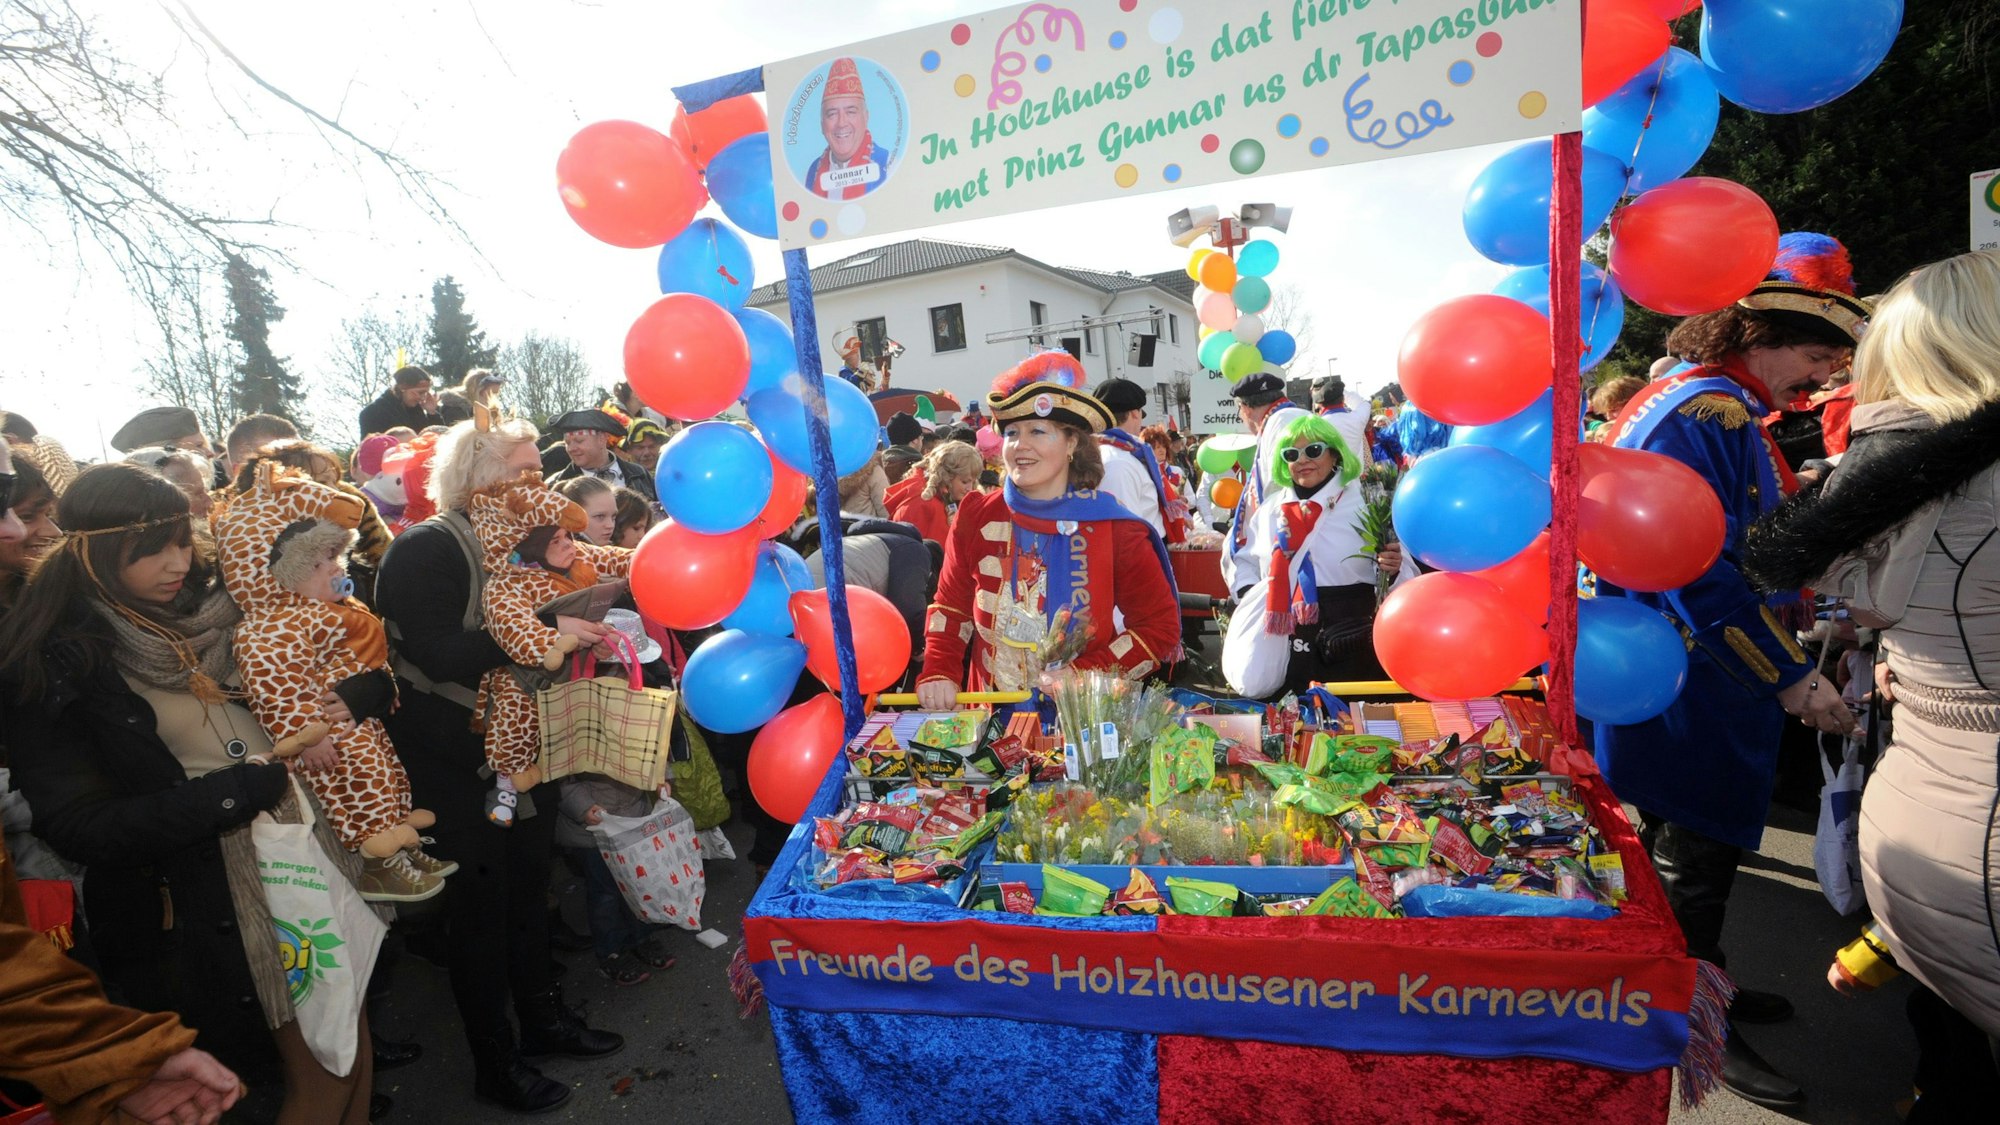 Der Karnevalszug in Holzhausen. Links und rechts bunt kostümierte Menschen, in der Mitte ein rot-blauer Karnevalswagen der „Freunde des Holzhausener Karnevals“.